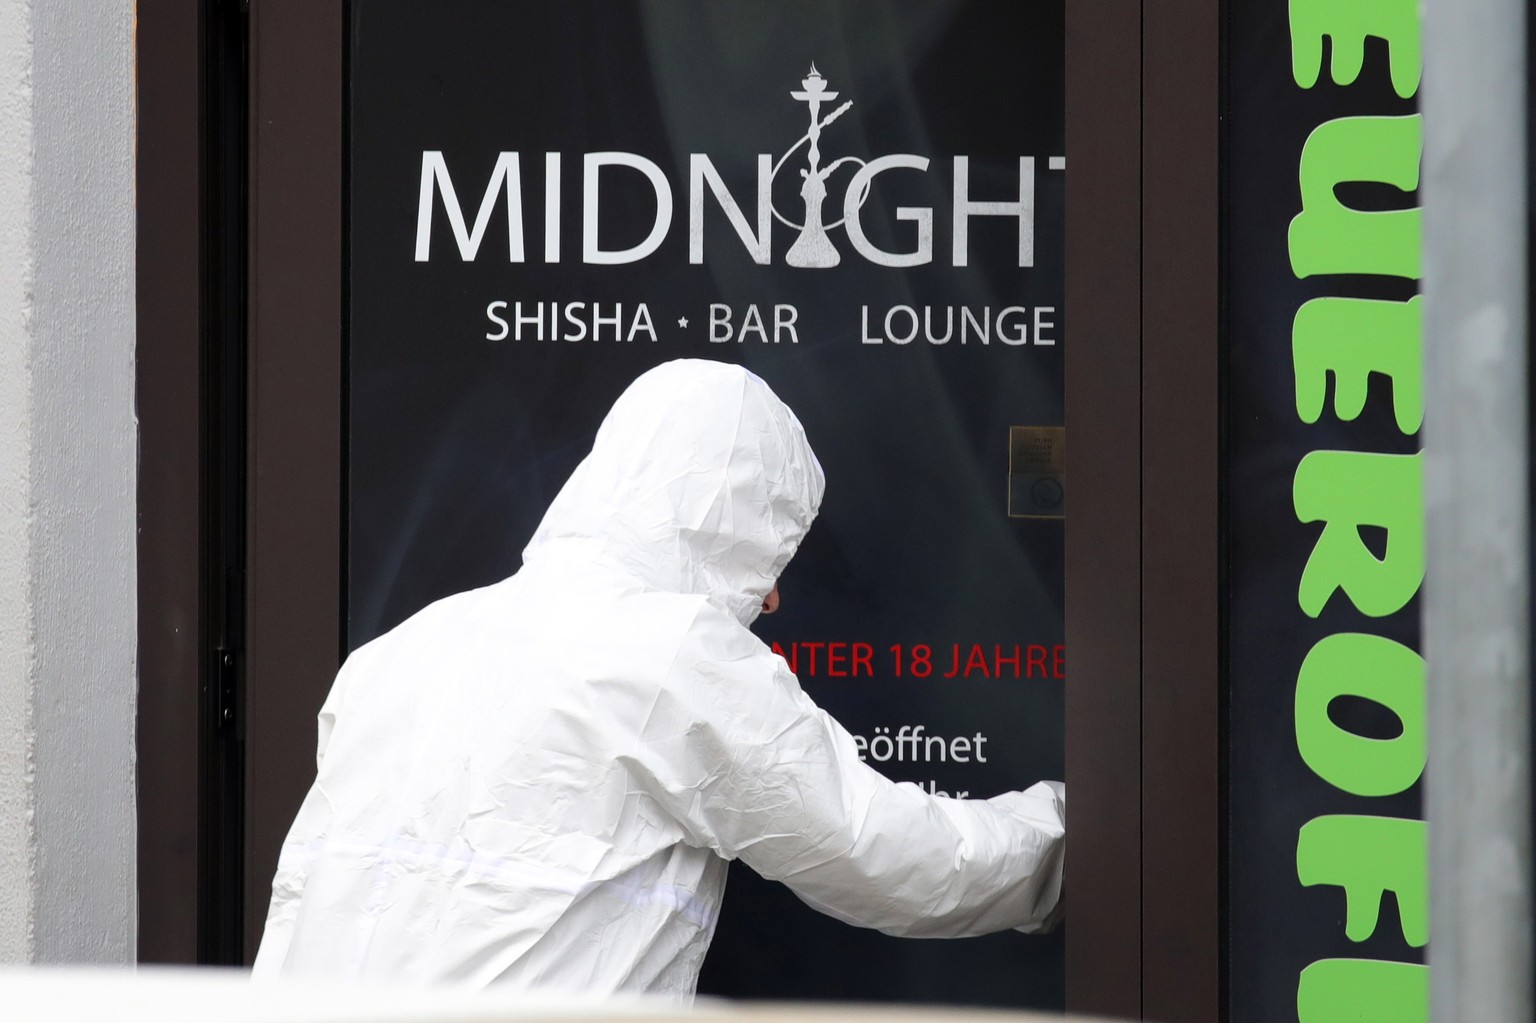 Der Täter erschoss in einer Shisha-Bar in Hanau mehrere Menschen. Die meisten waren Einwanderer. 